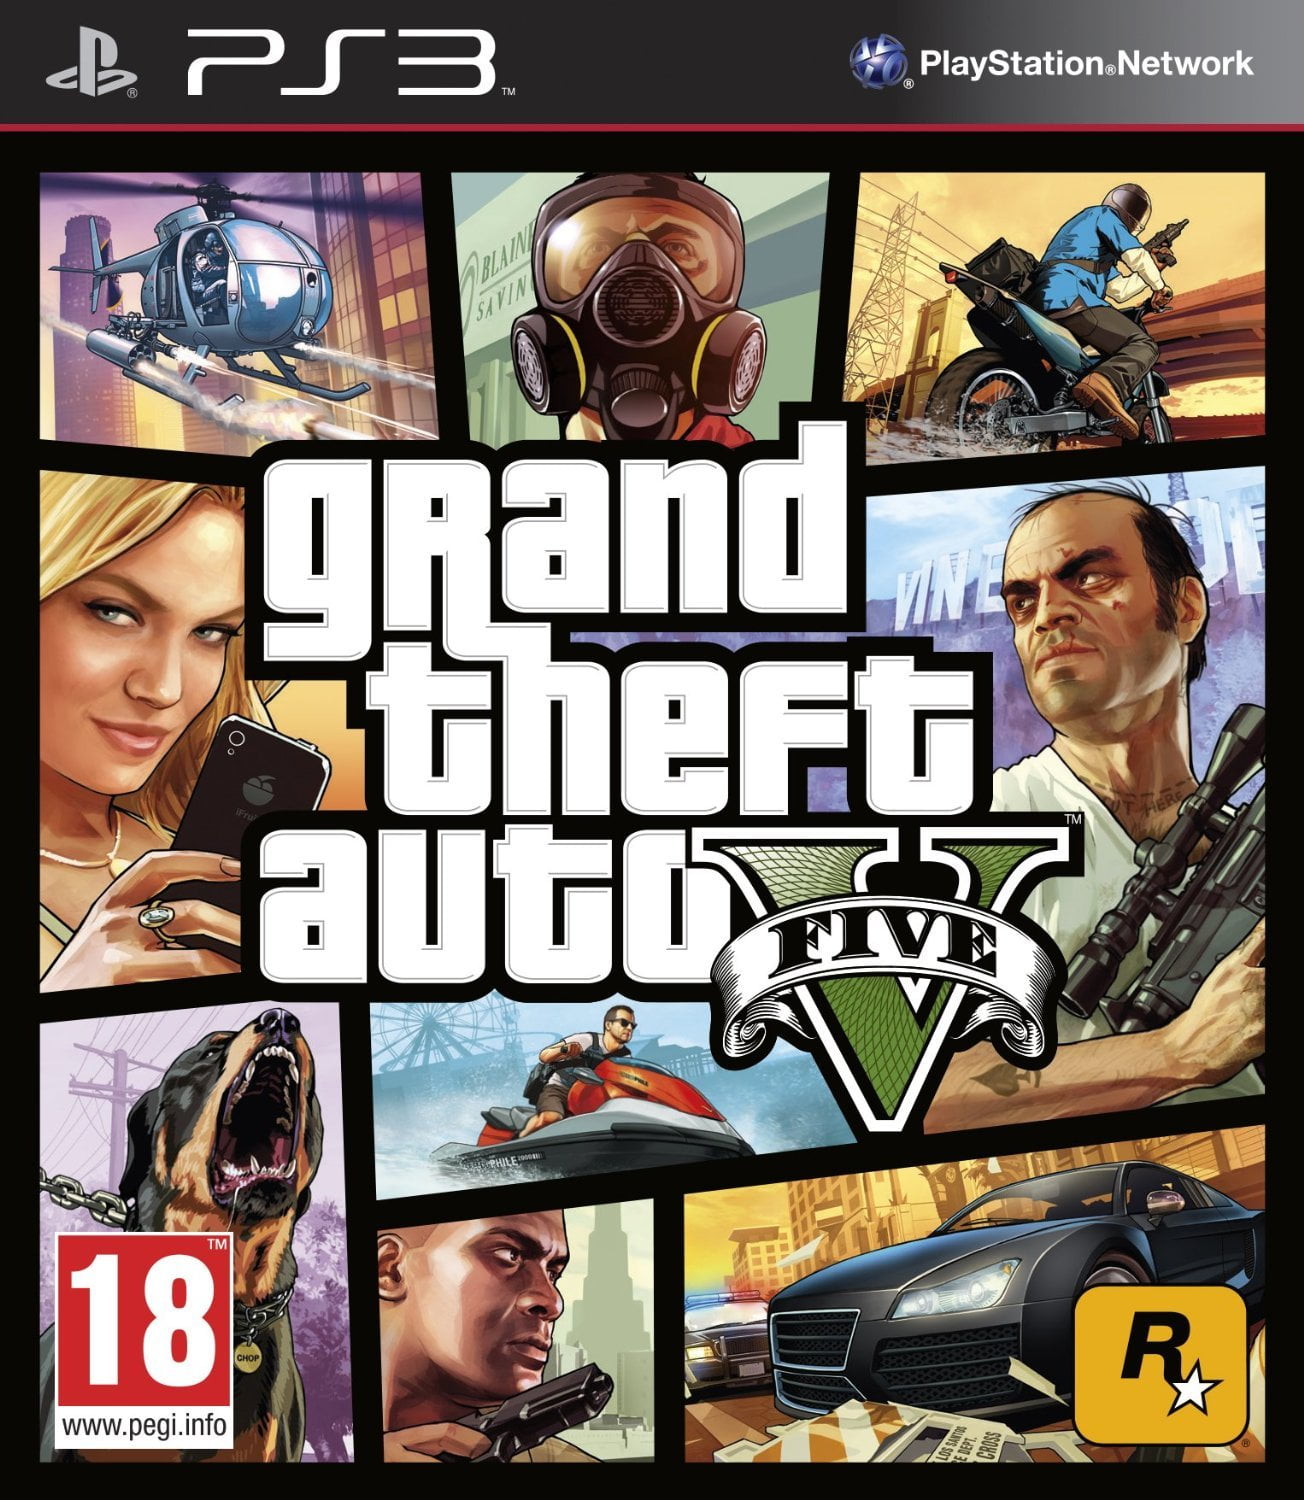 Grand Theft Auto V Ps3 na Americanas Empresas